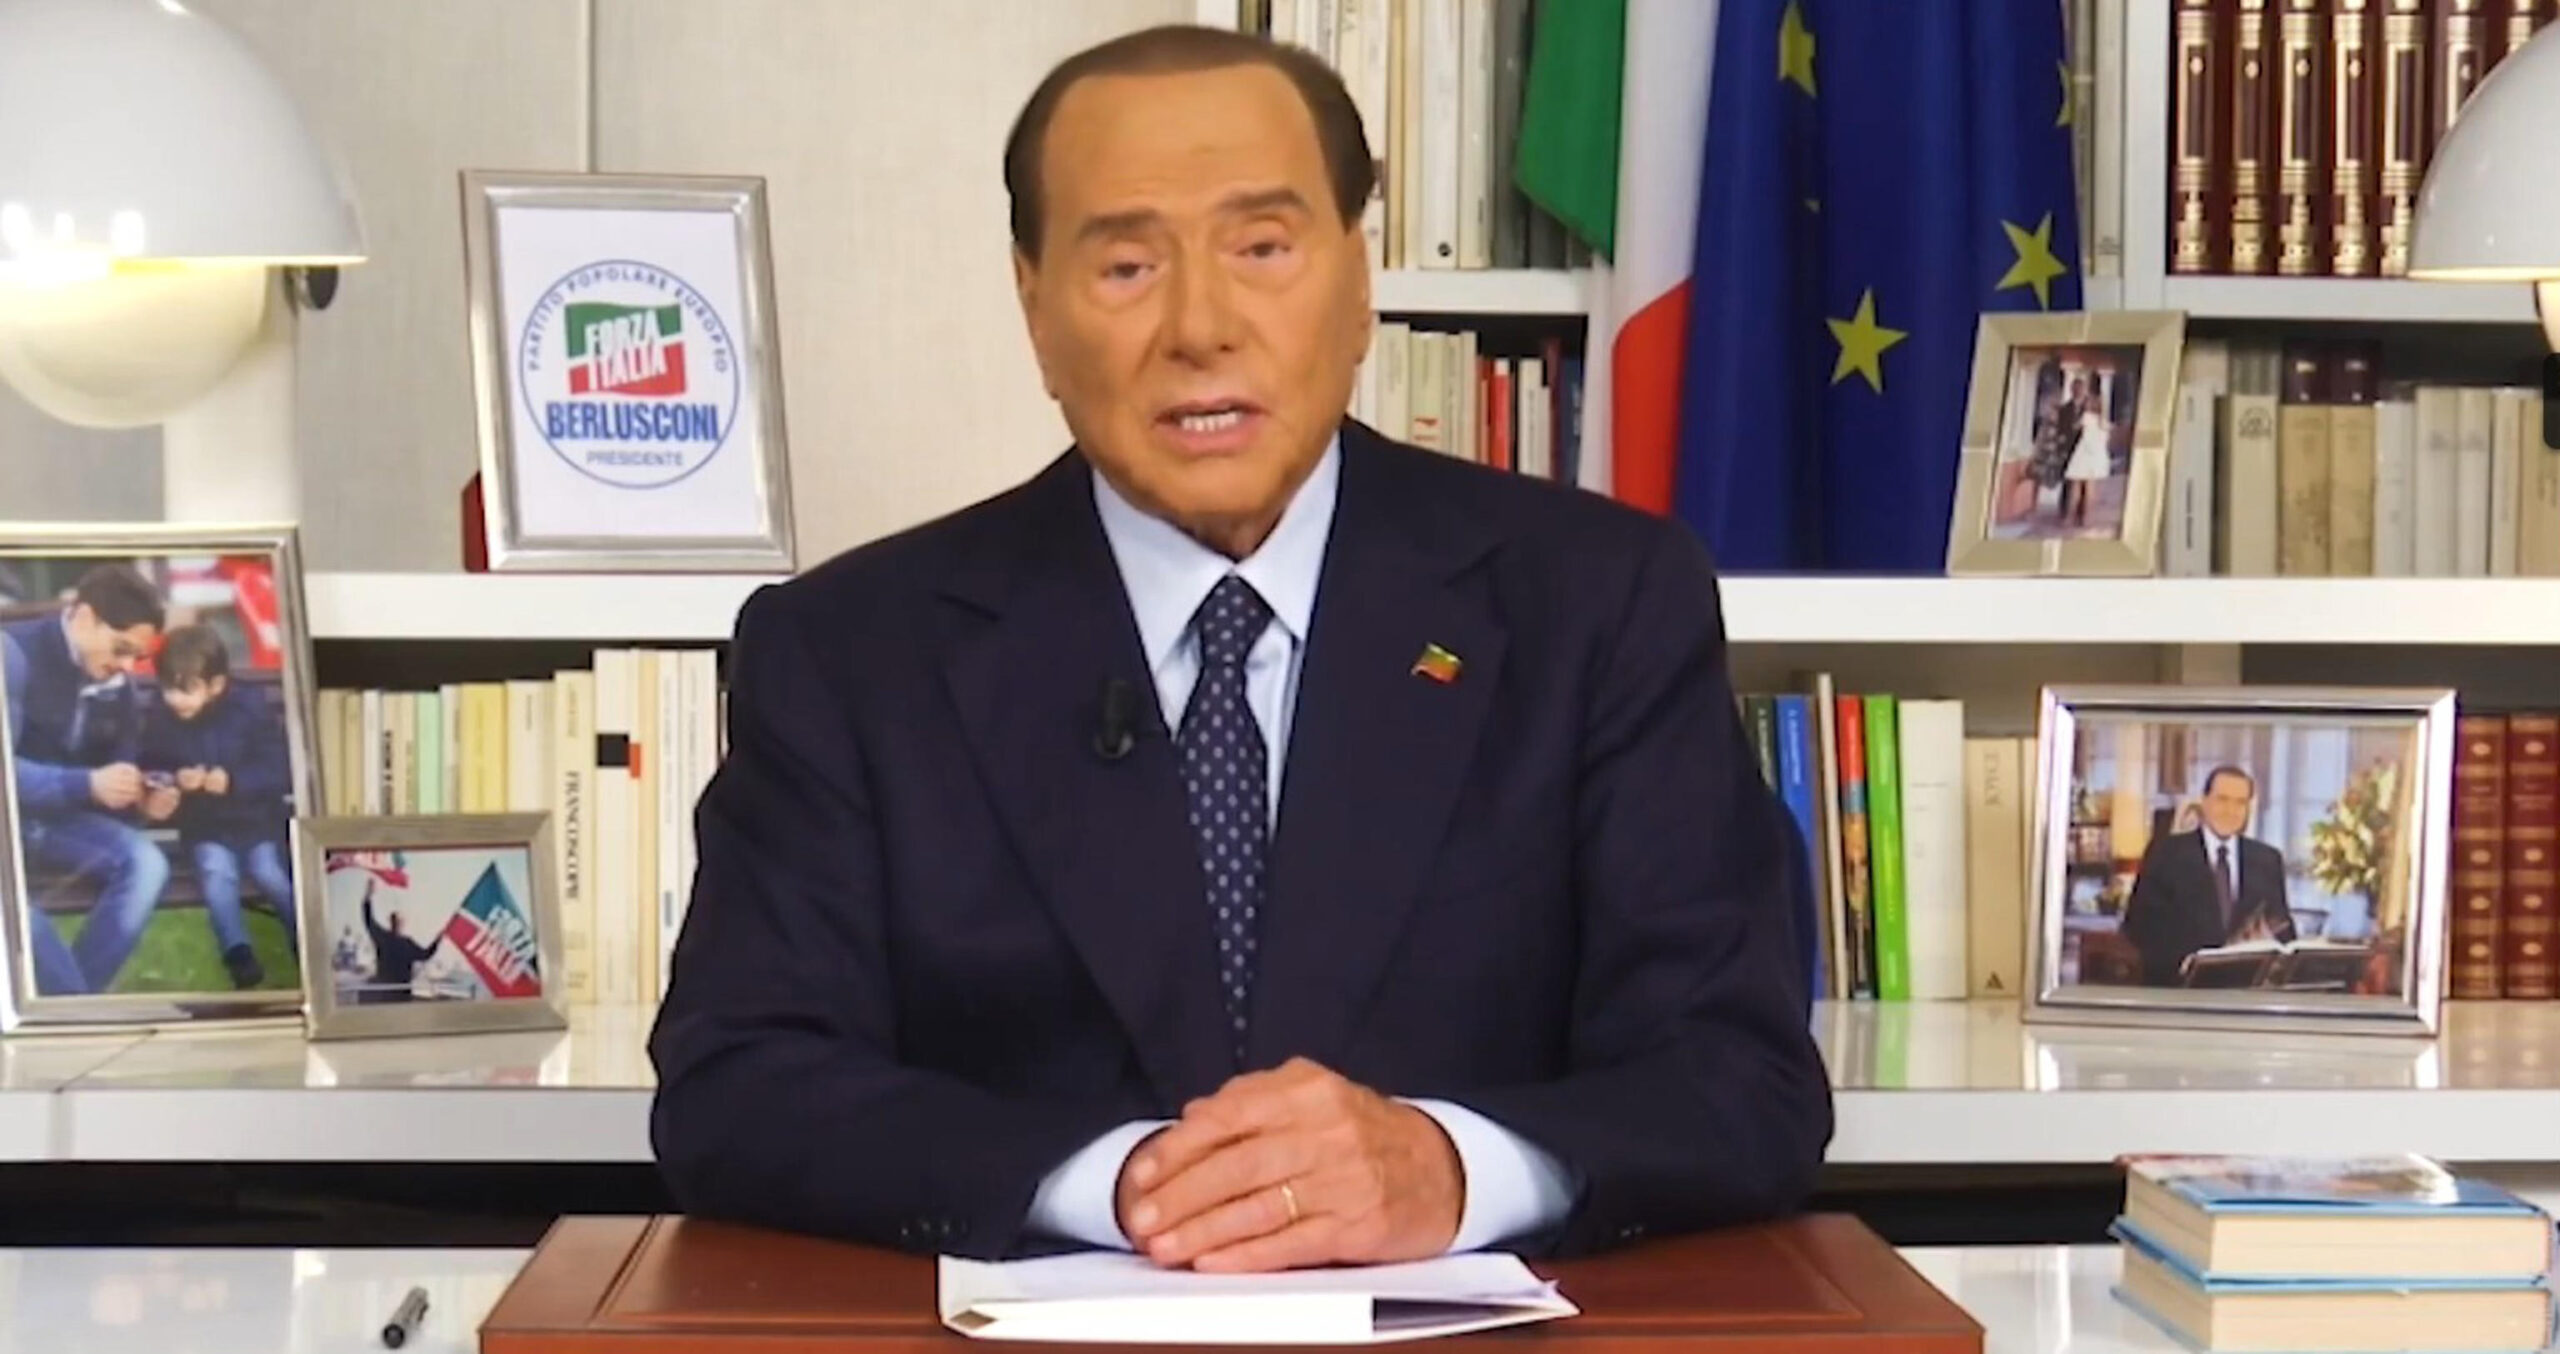 Elezioni 2022, Berlusconi torna sulla riforma della giustizia: «Le assoluzioni siano inappellabili» – Il video